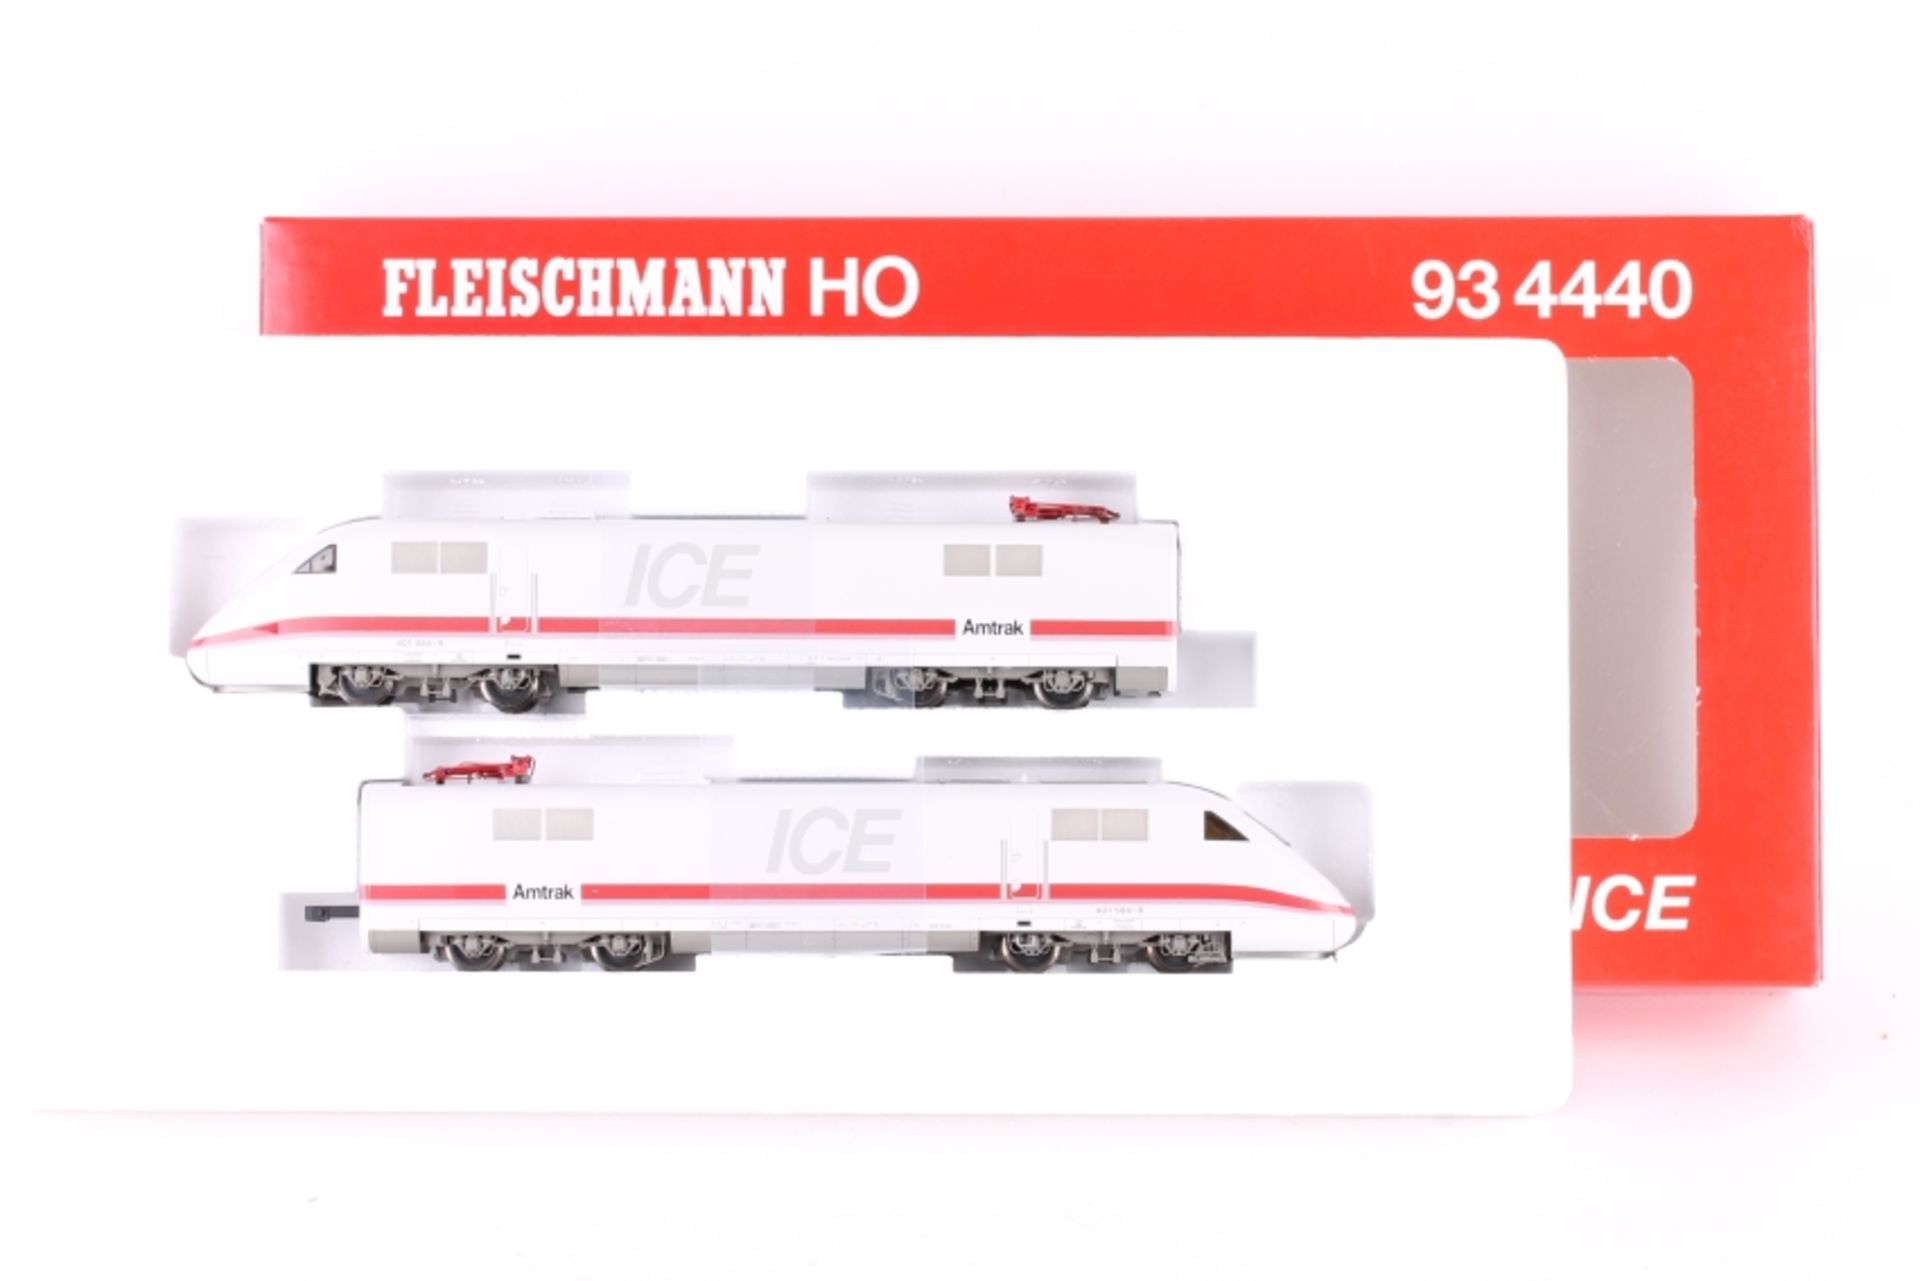 Fleischmann 93 4440, Amtrak-ICE, zweiteilige Motorwagen-Garnitur Fleischmann 93 4440, Amtrak-ICE,